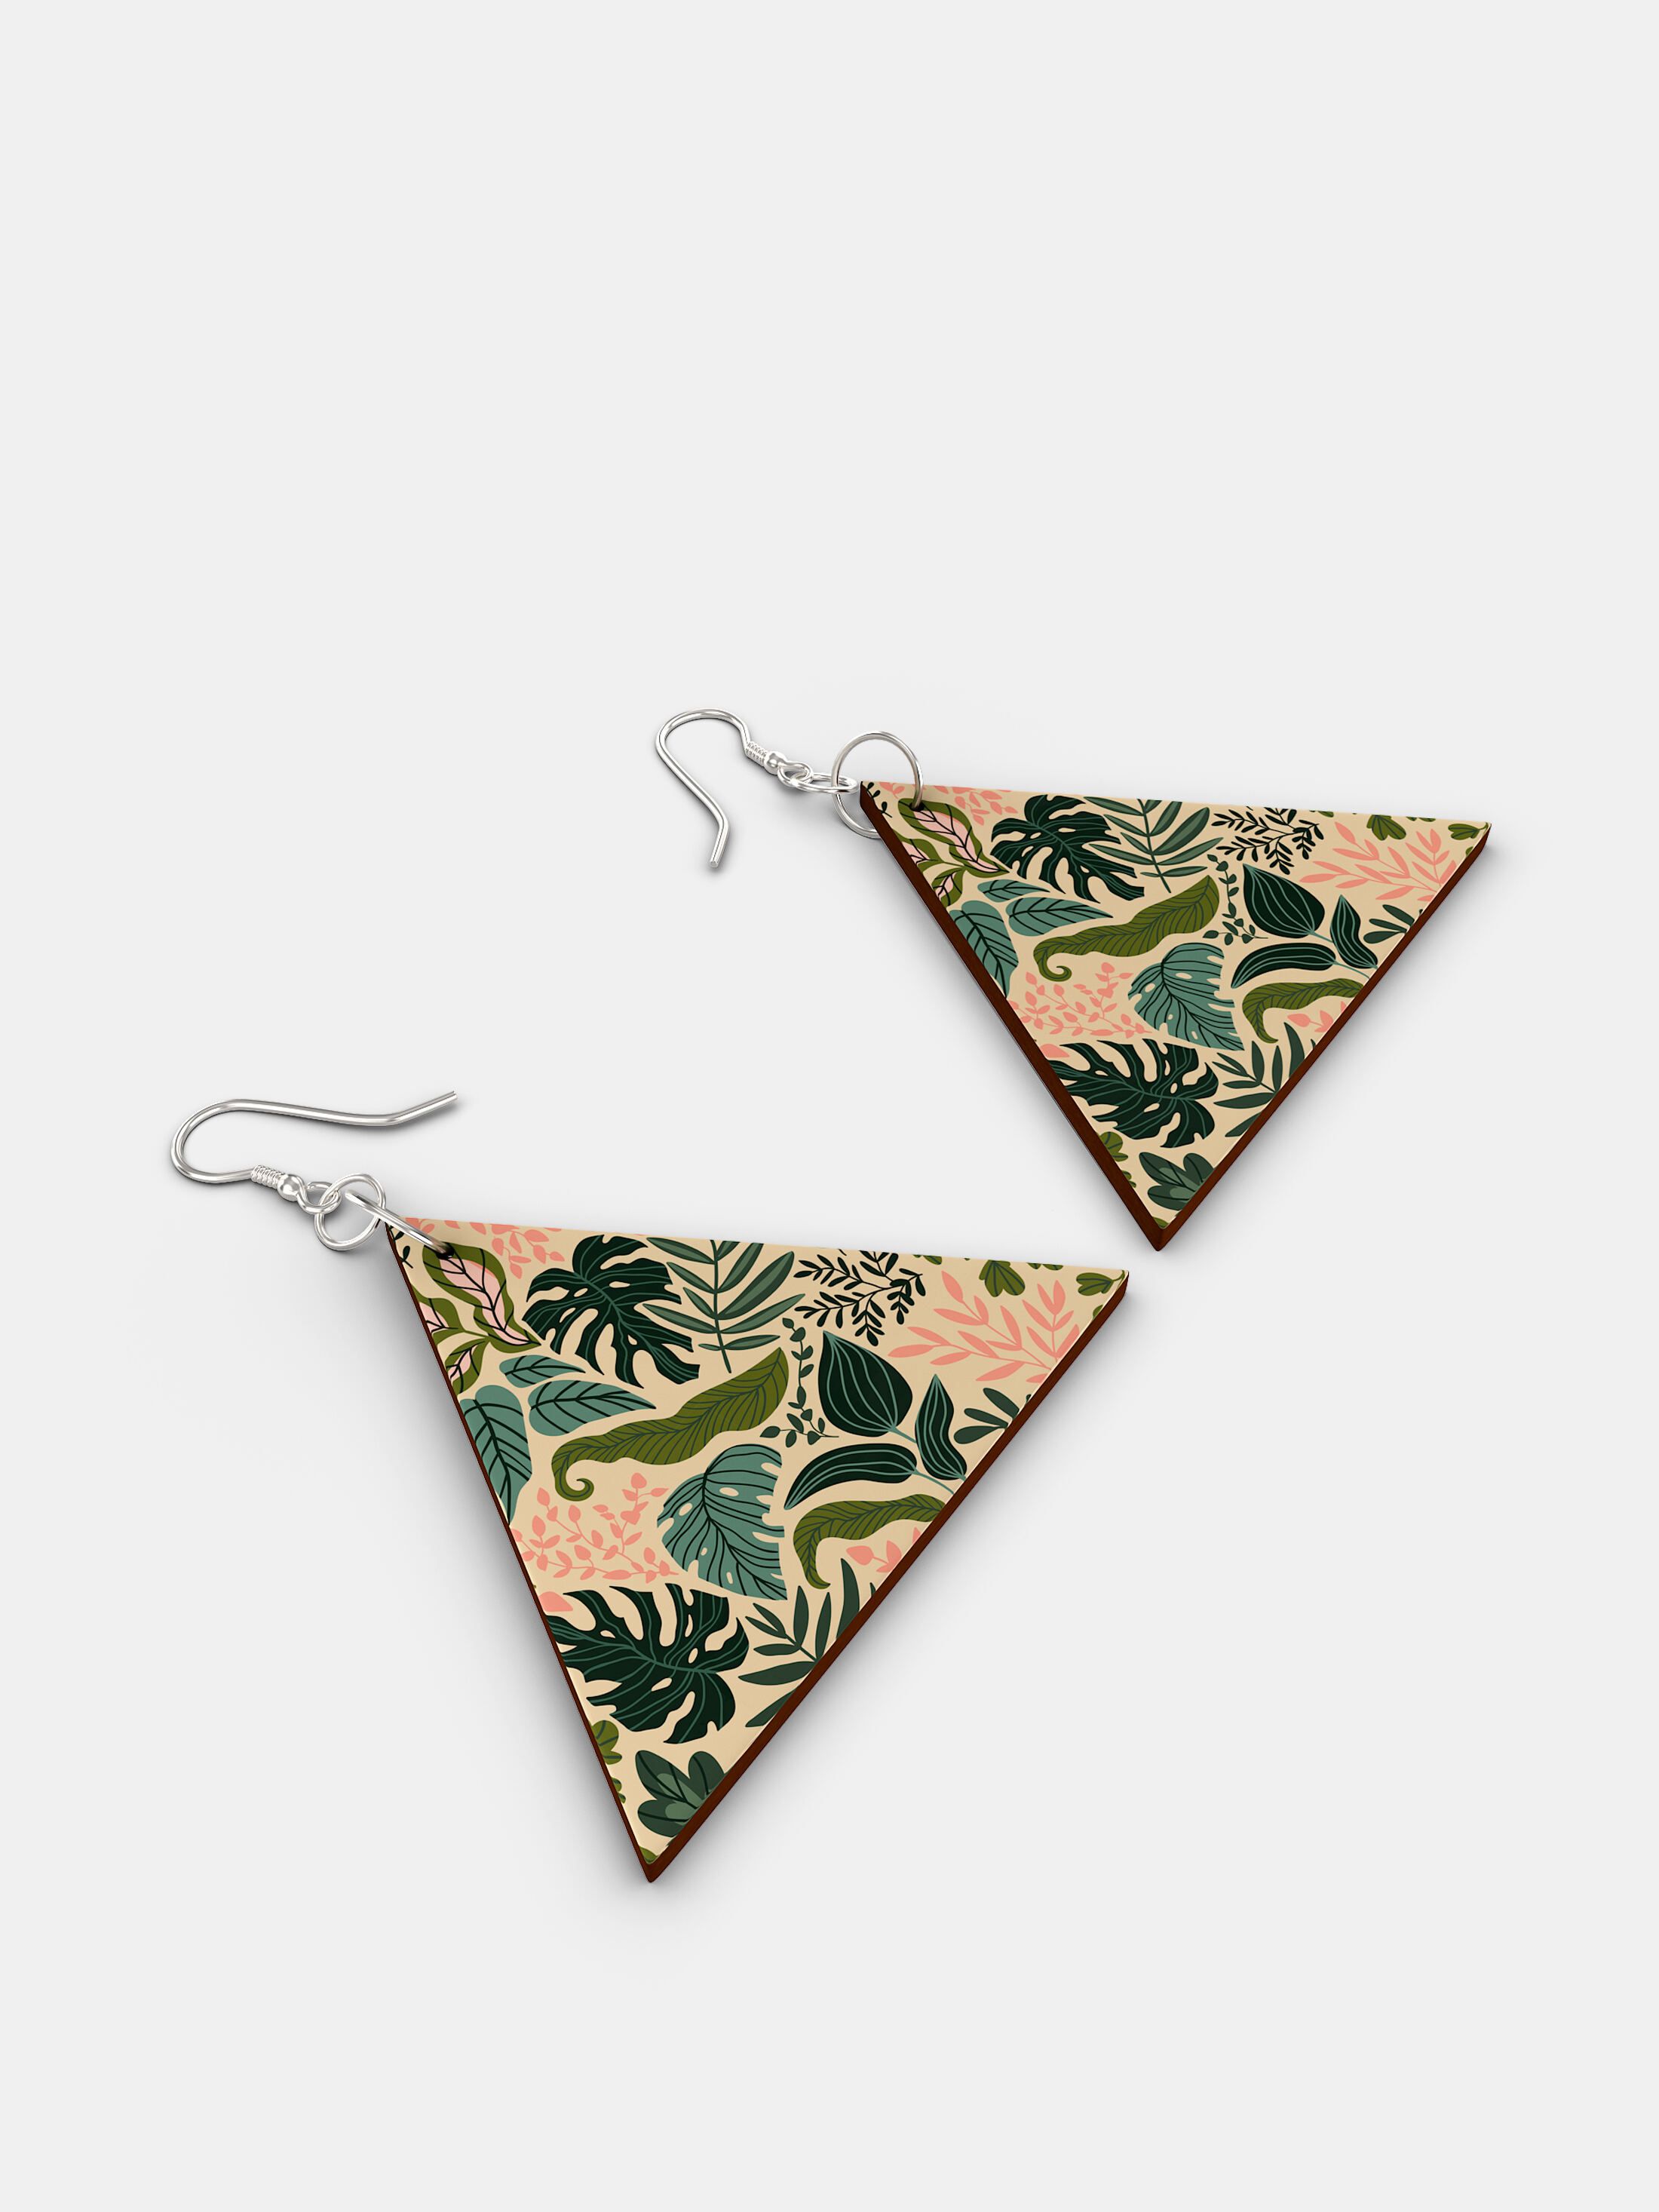 custom wooden earrings triangle shape